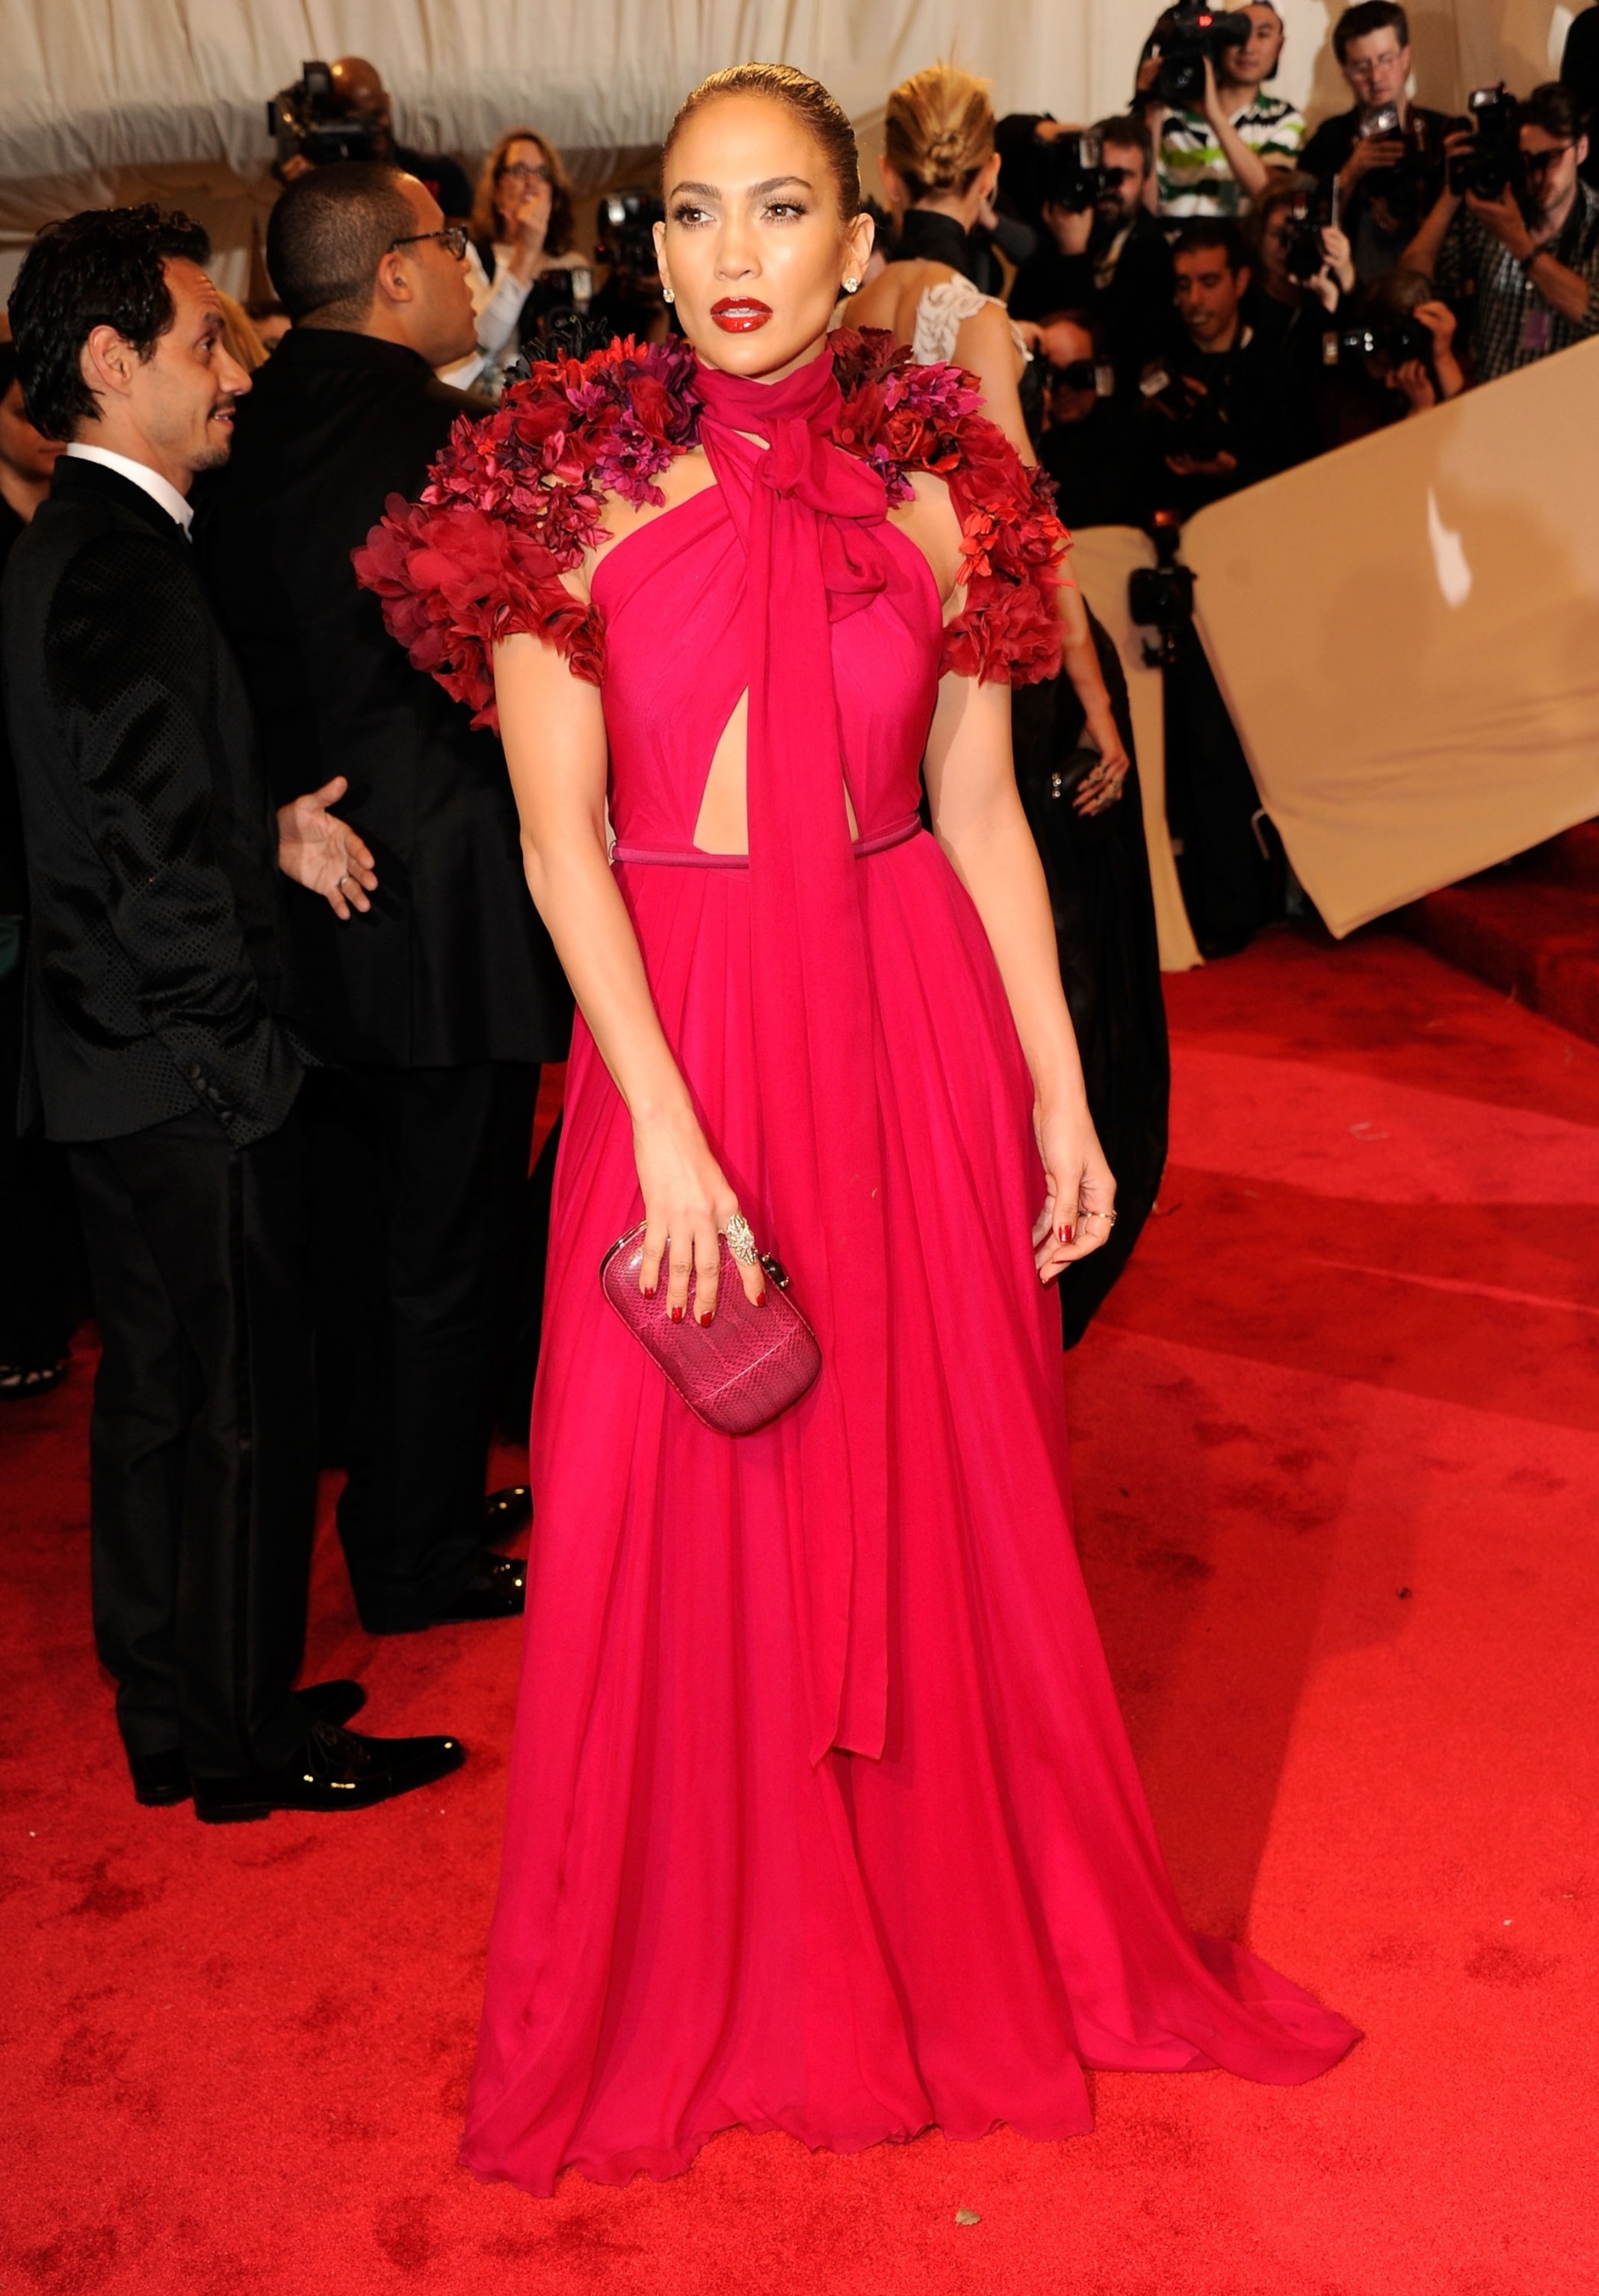 Dạ tiệc năm 2011 với chủ đề vinh danh Alexander McQueen đã truyền cảm hứng cho Jennifer Lopez diện chiếc váy đỏ của Gucci với chi tiết in hoa 3D ở cầu vai. Trang phục càng làm nổi bật vẻ đẹp sắc sảo, quyến rũ cùng thần thái đỉnh cao của nữ ca sĩ.